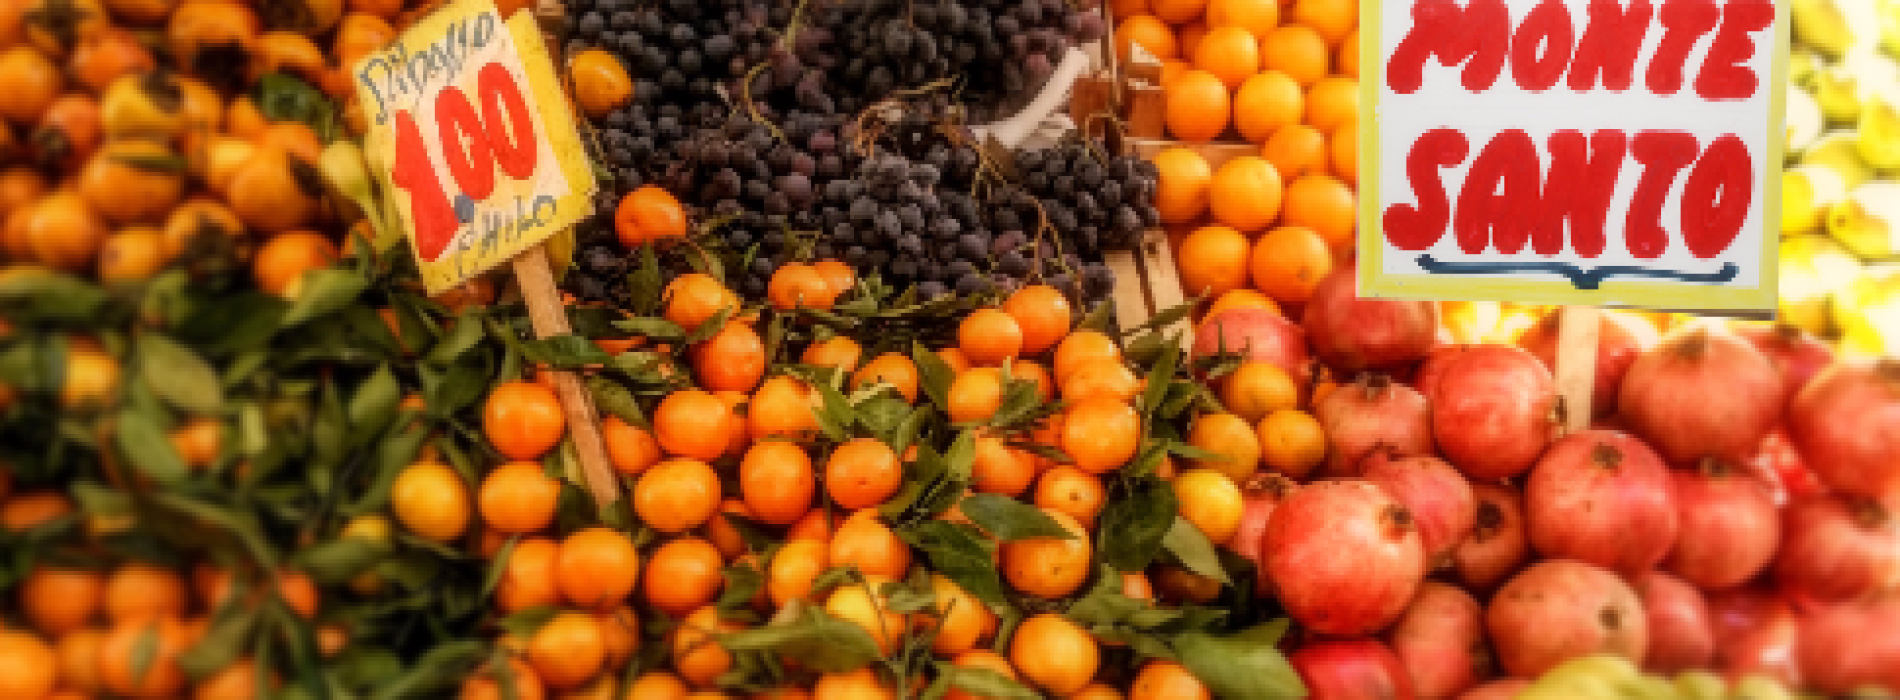 Montesanto foodwalk: cibo, tradizione e digitale